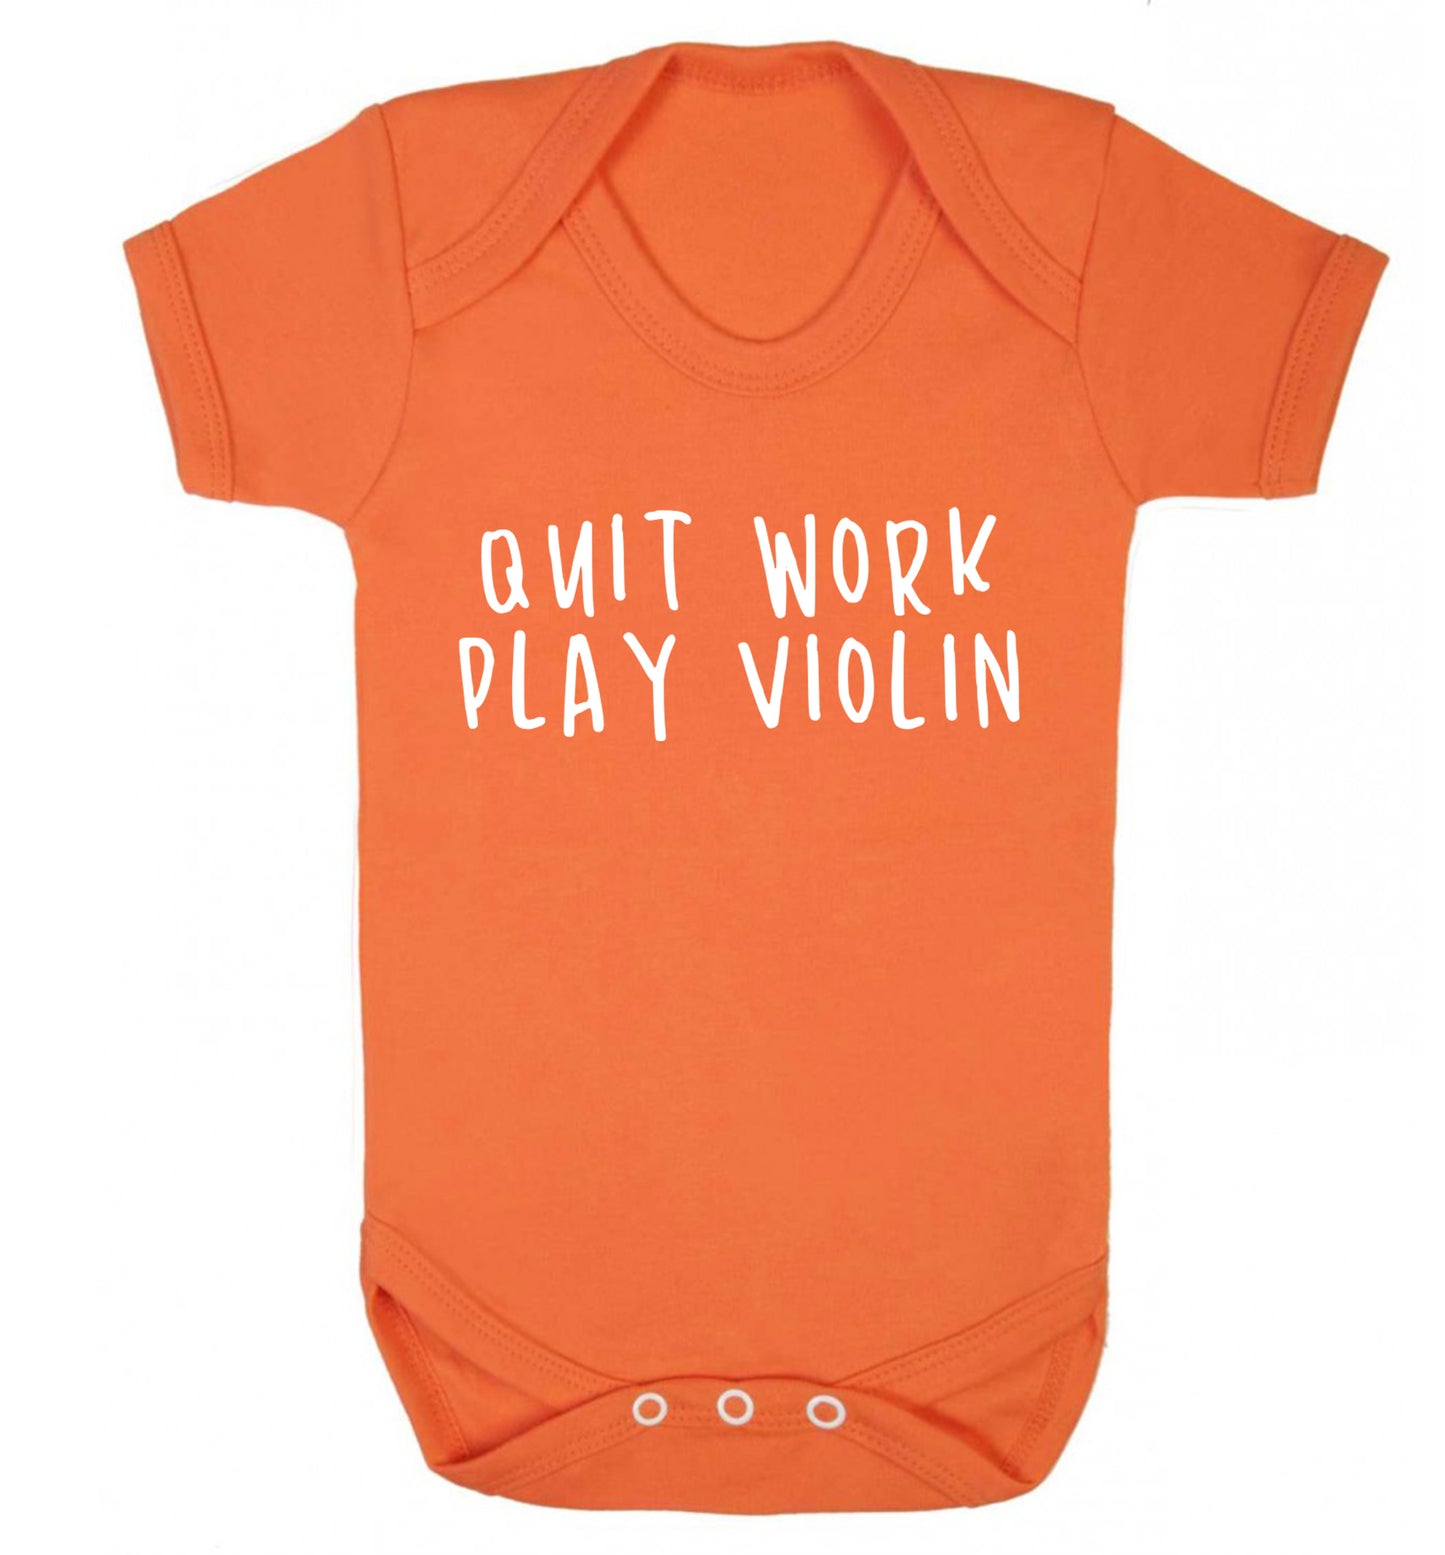 Quit work play violin Baby Vest orange 18-24 months